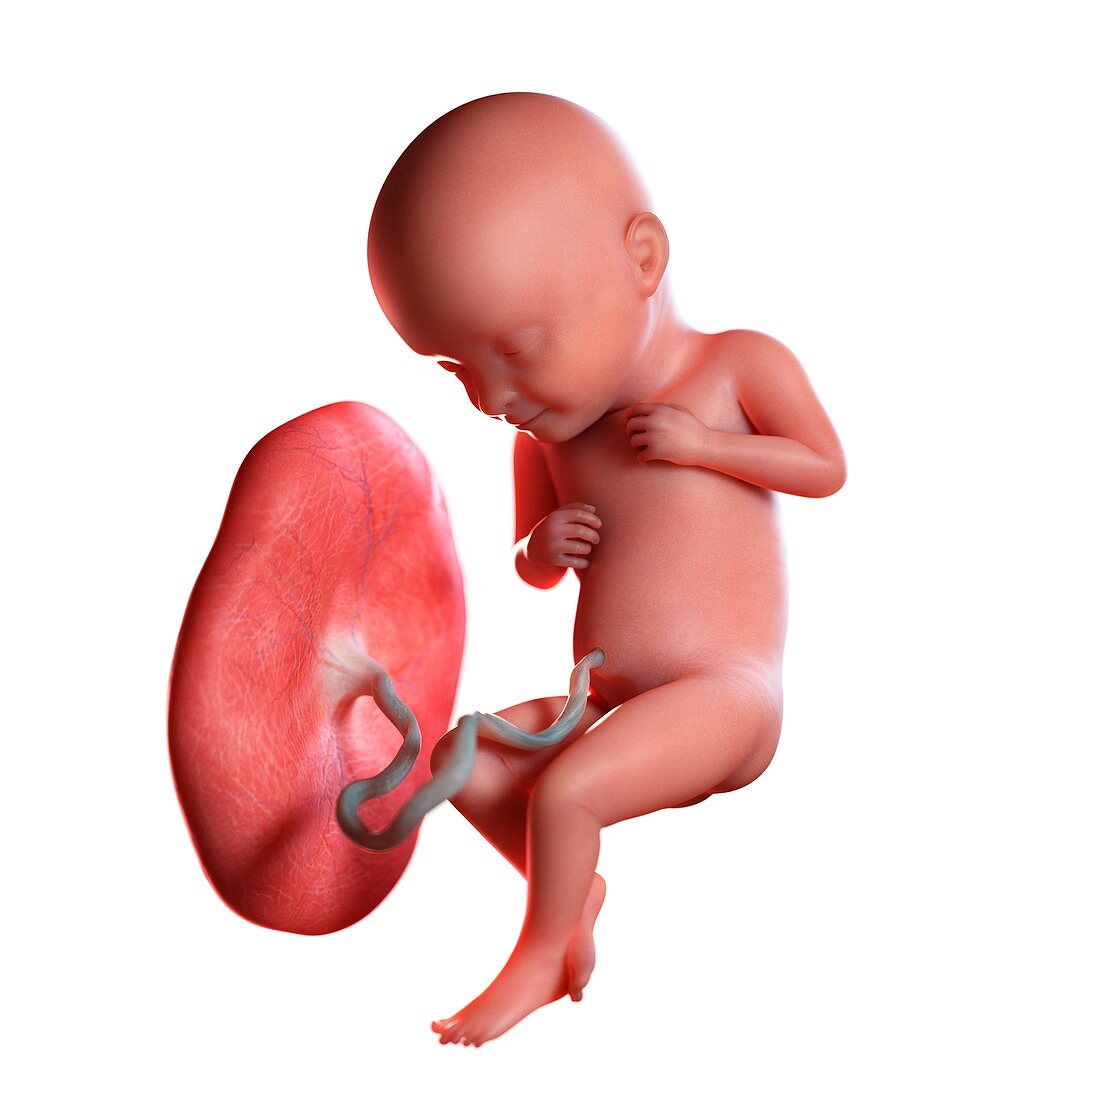 Human foetus age 32 weeks, illustration